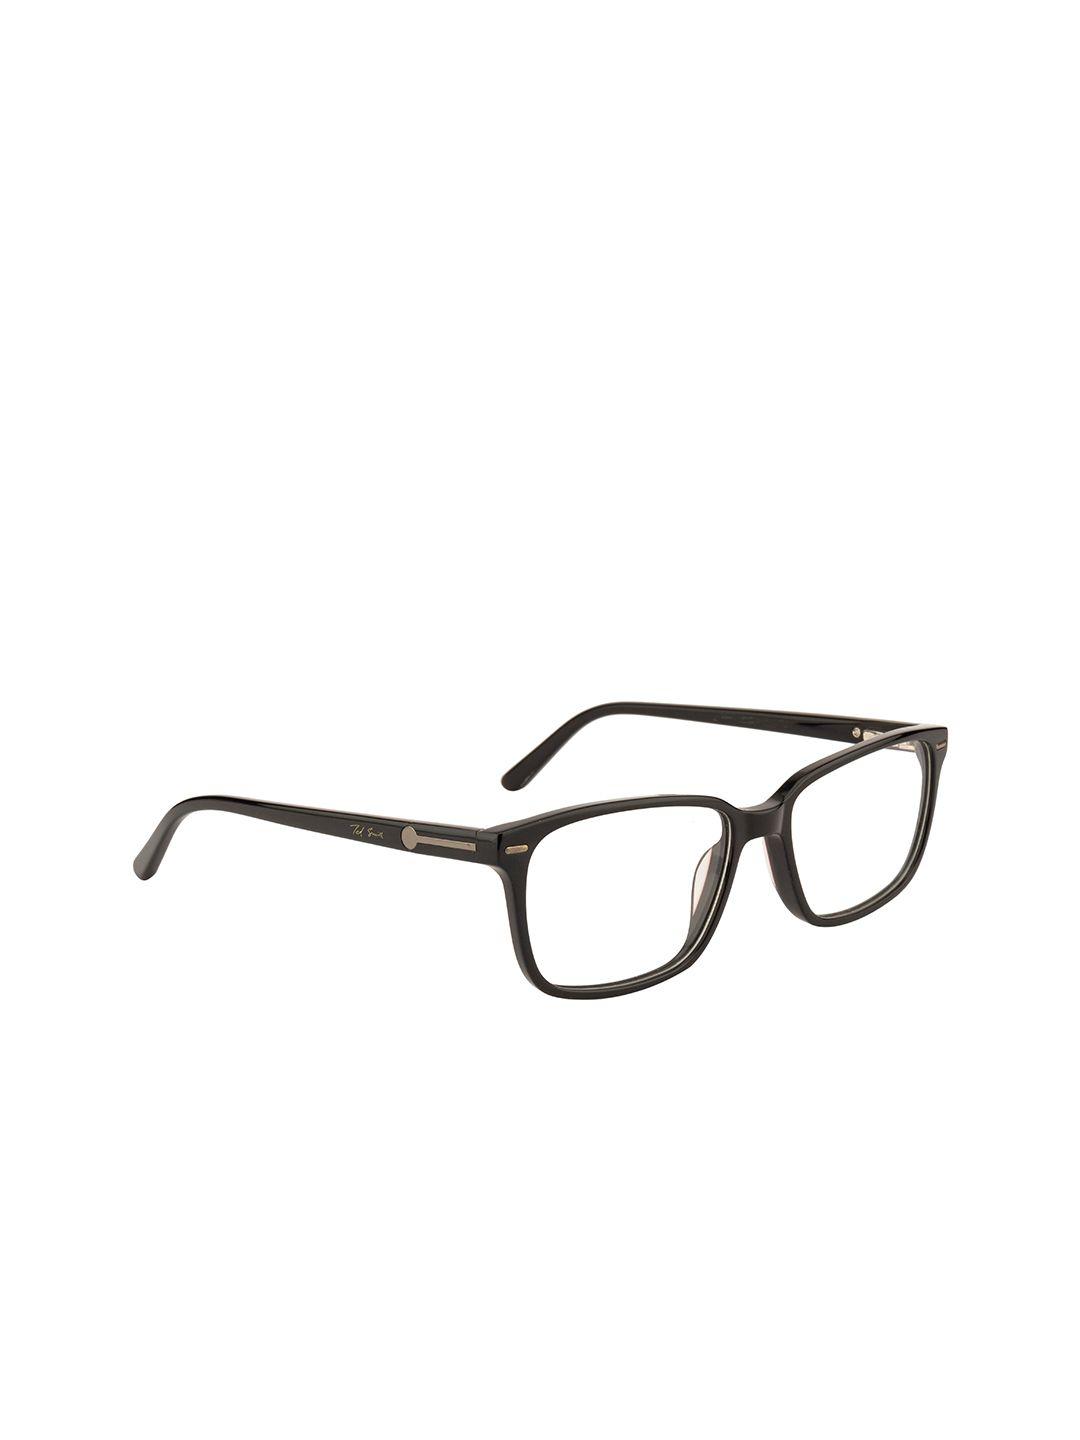 ted smith unisex black full rim wayfarer frames eyeglasses